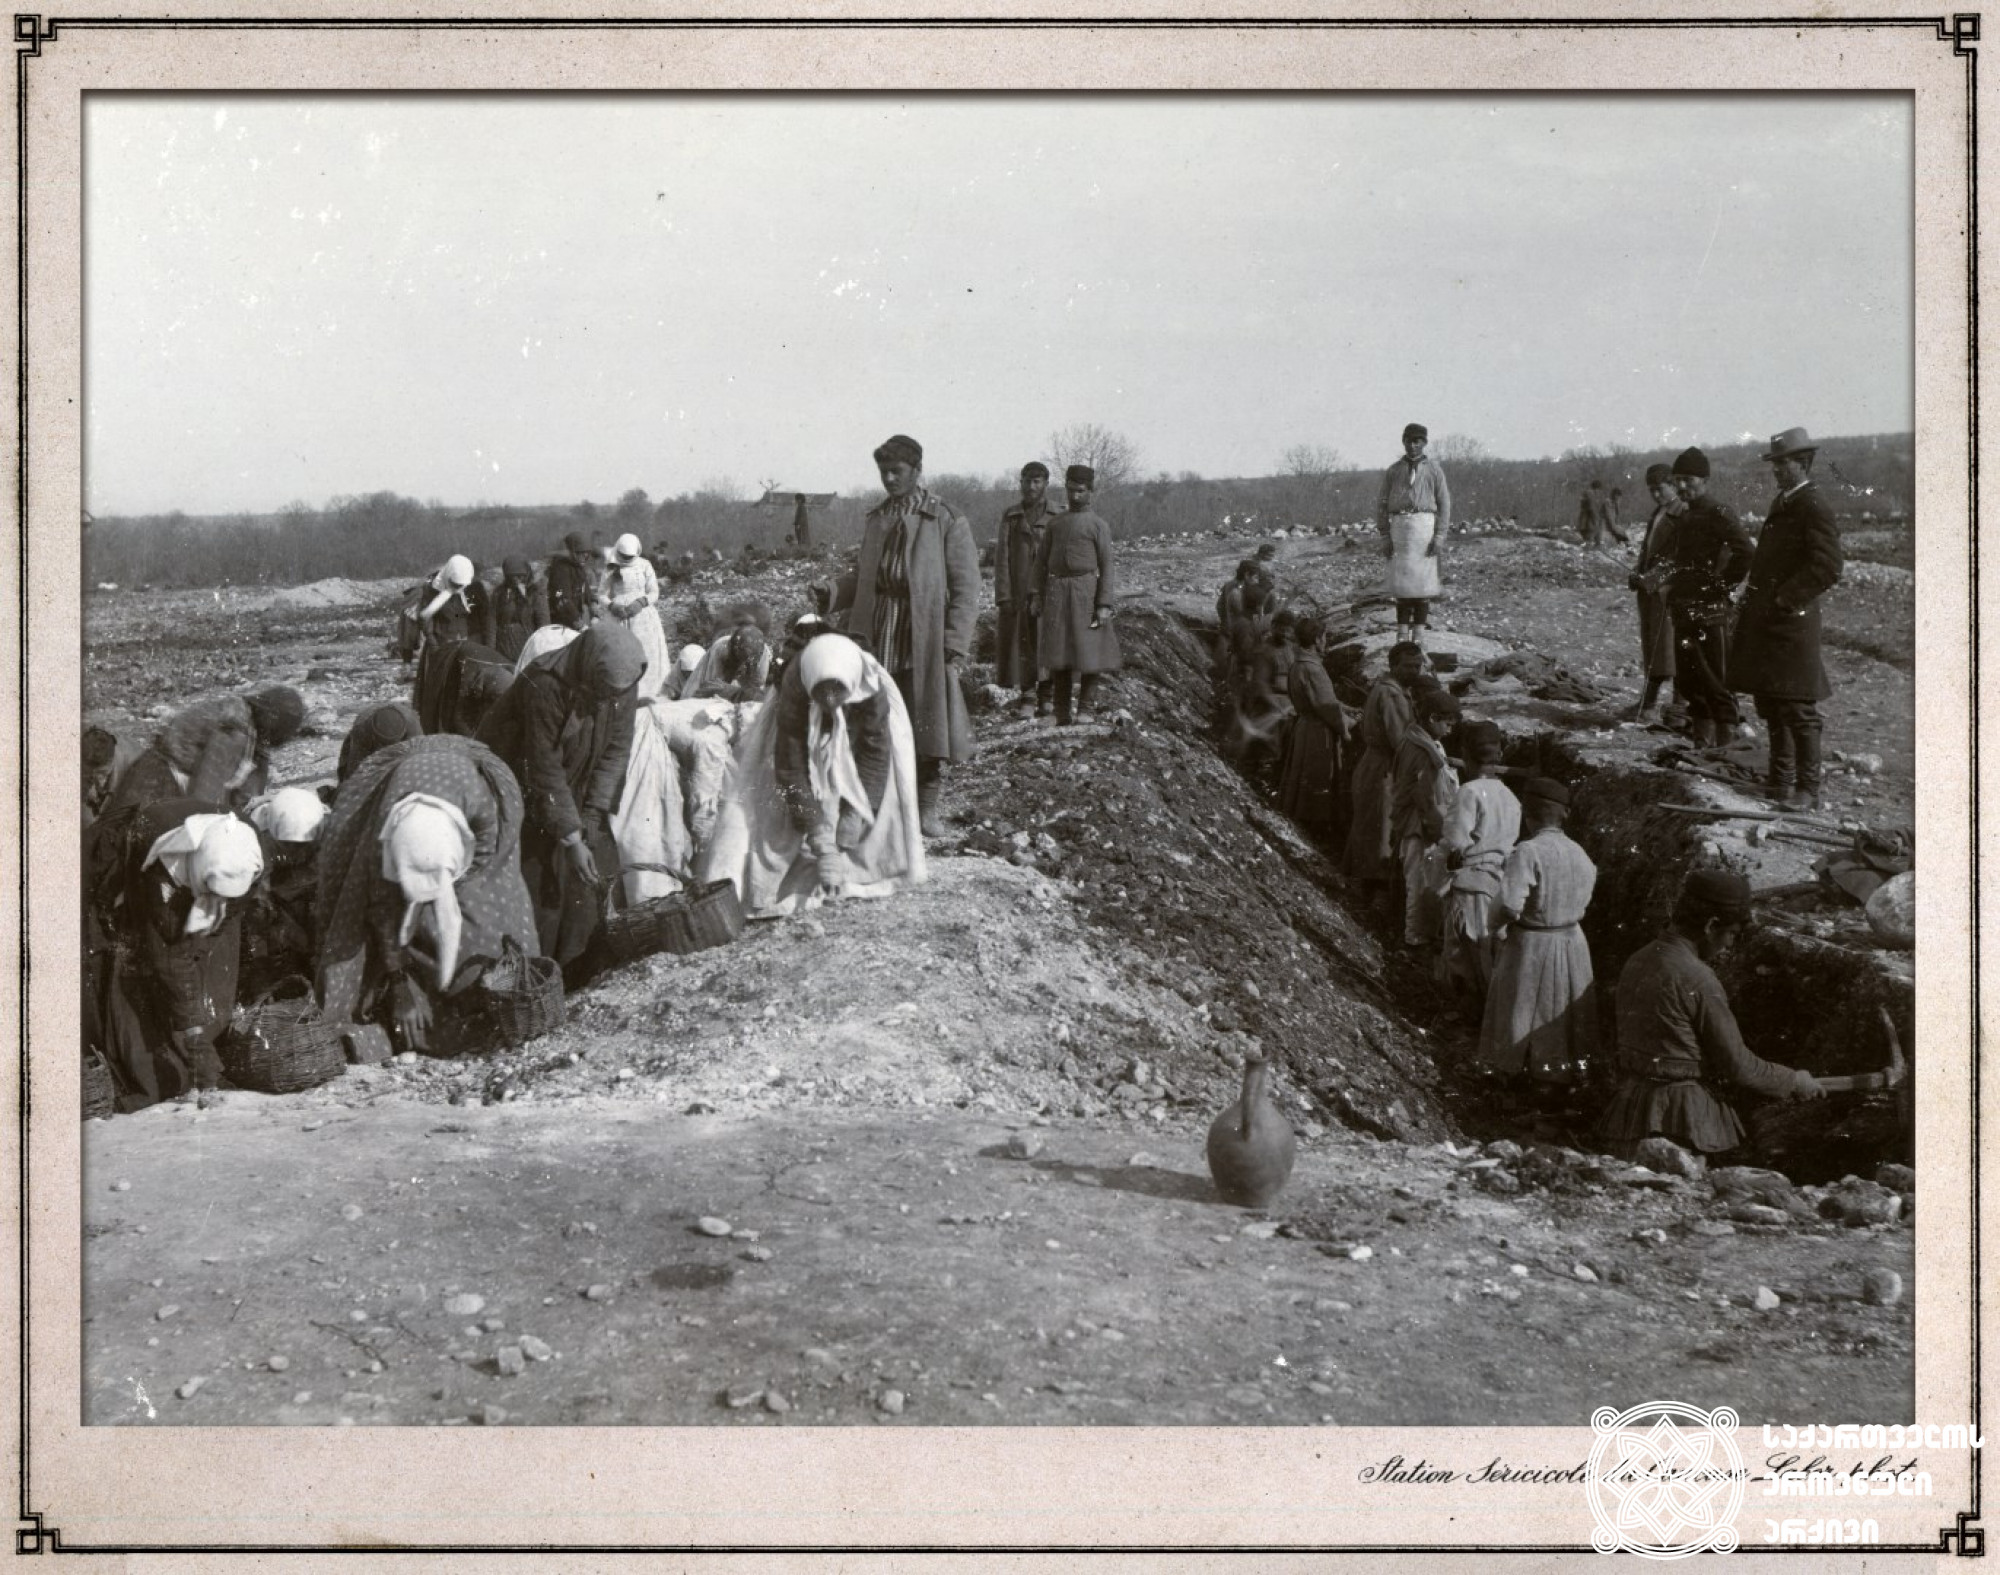 საუფლისწულო მამული. ნიადაგის გაწმენდა ქვებისგან. <br>
კახეთი, 1900-1905 წლები <br>
ფოტო: კონსტანტინე ზანისი <br>
Prince Estate. Cleaning of soil from the stones <br>
Kakheti, 1900-1905 <br>
Photo by Konstantin Zanis